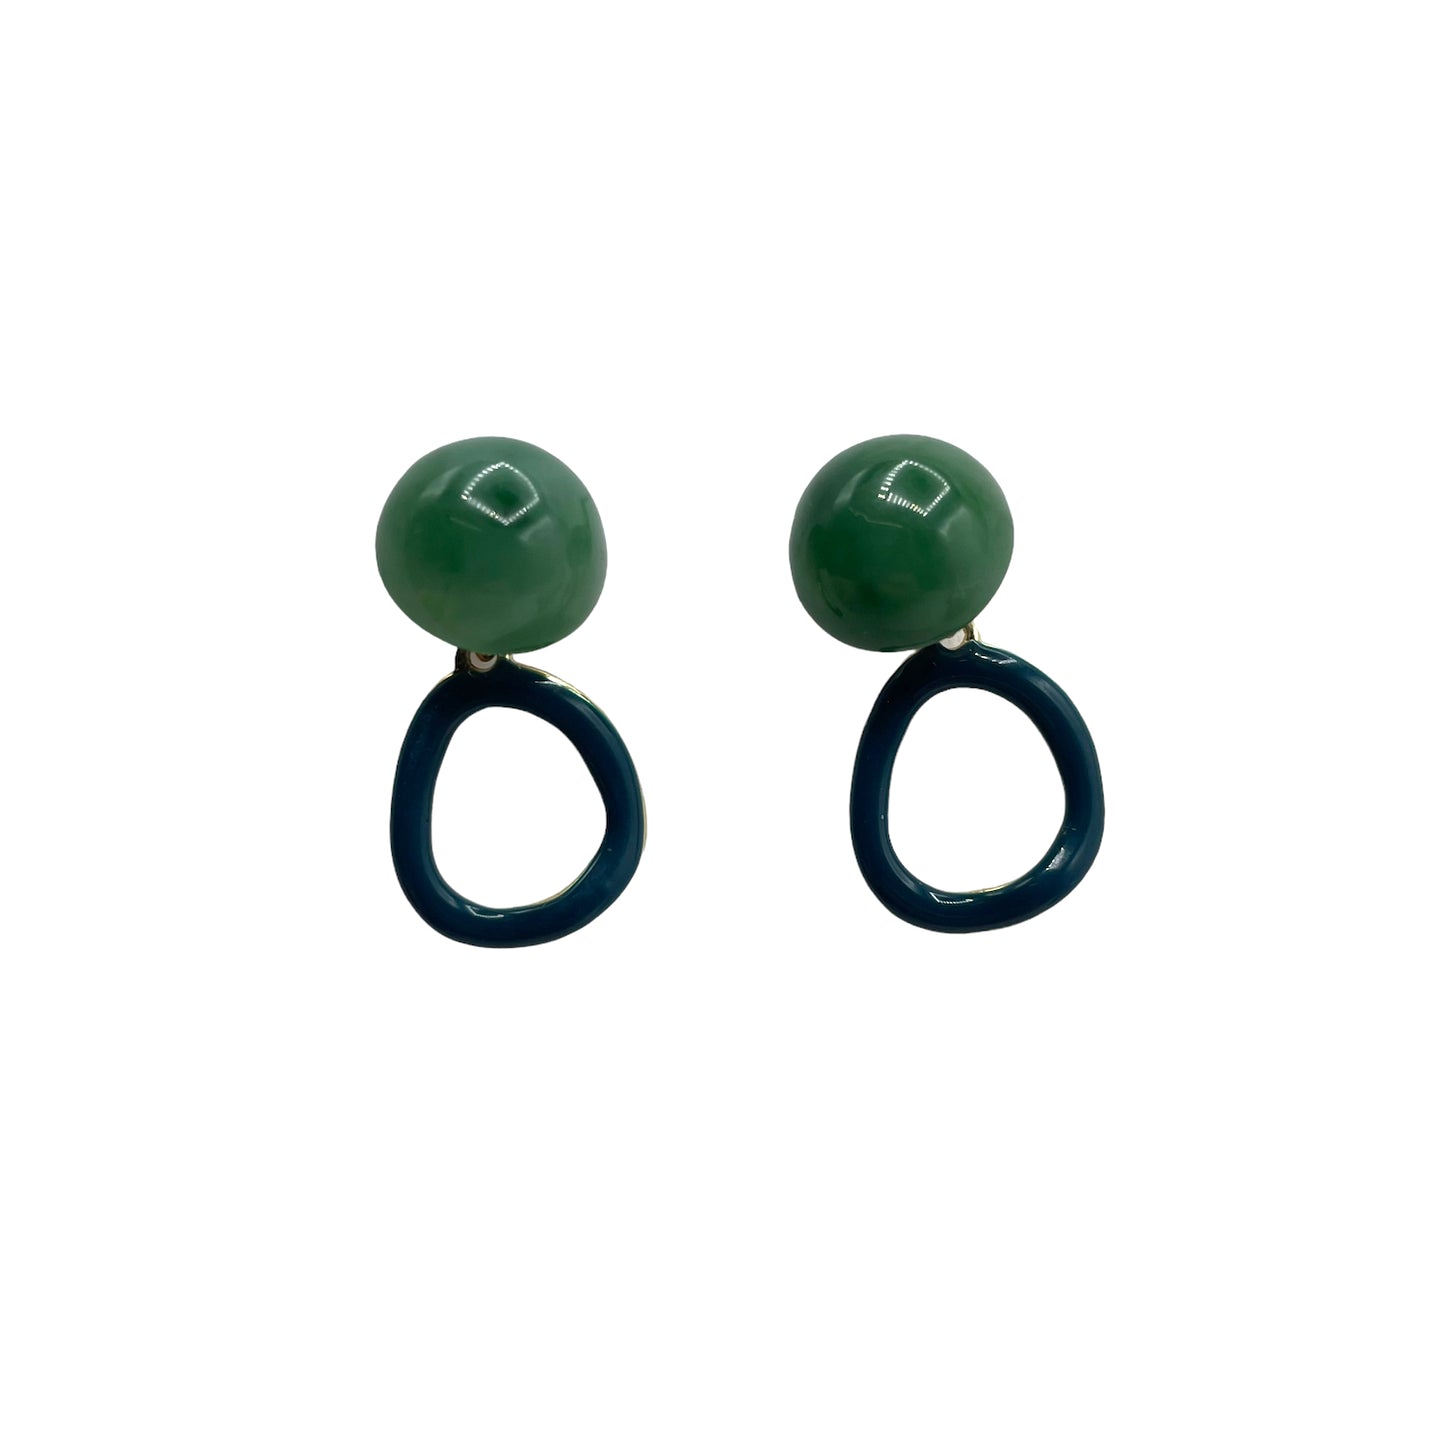 Teal & green oval drop earrings